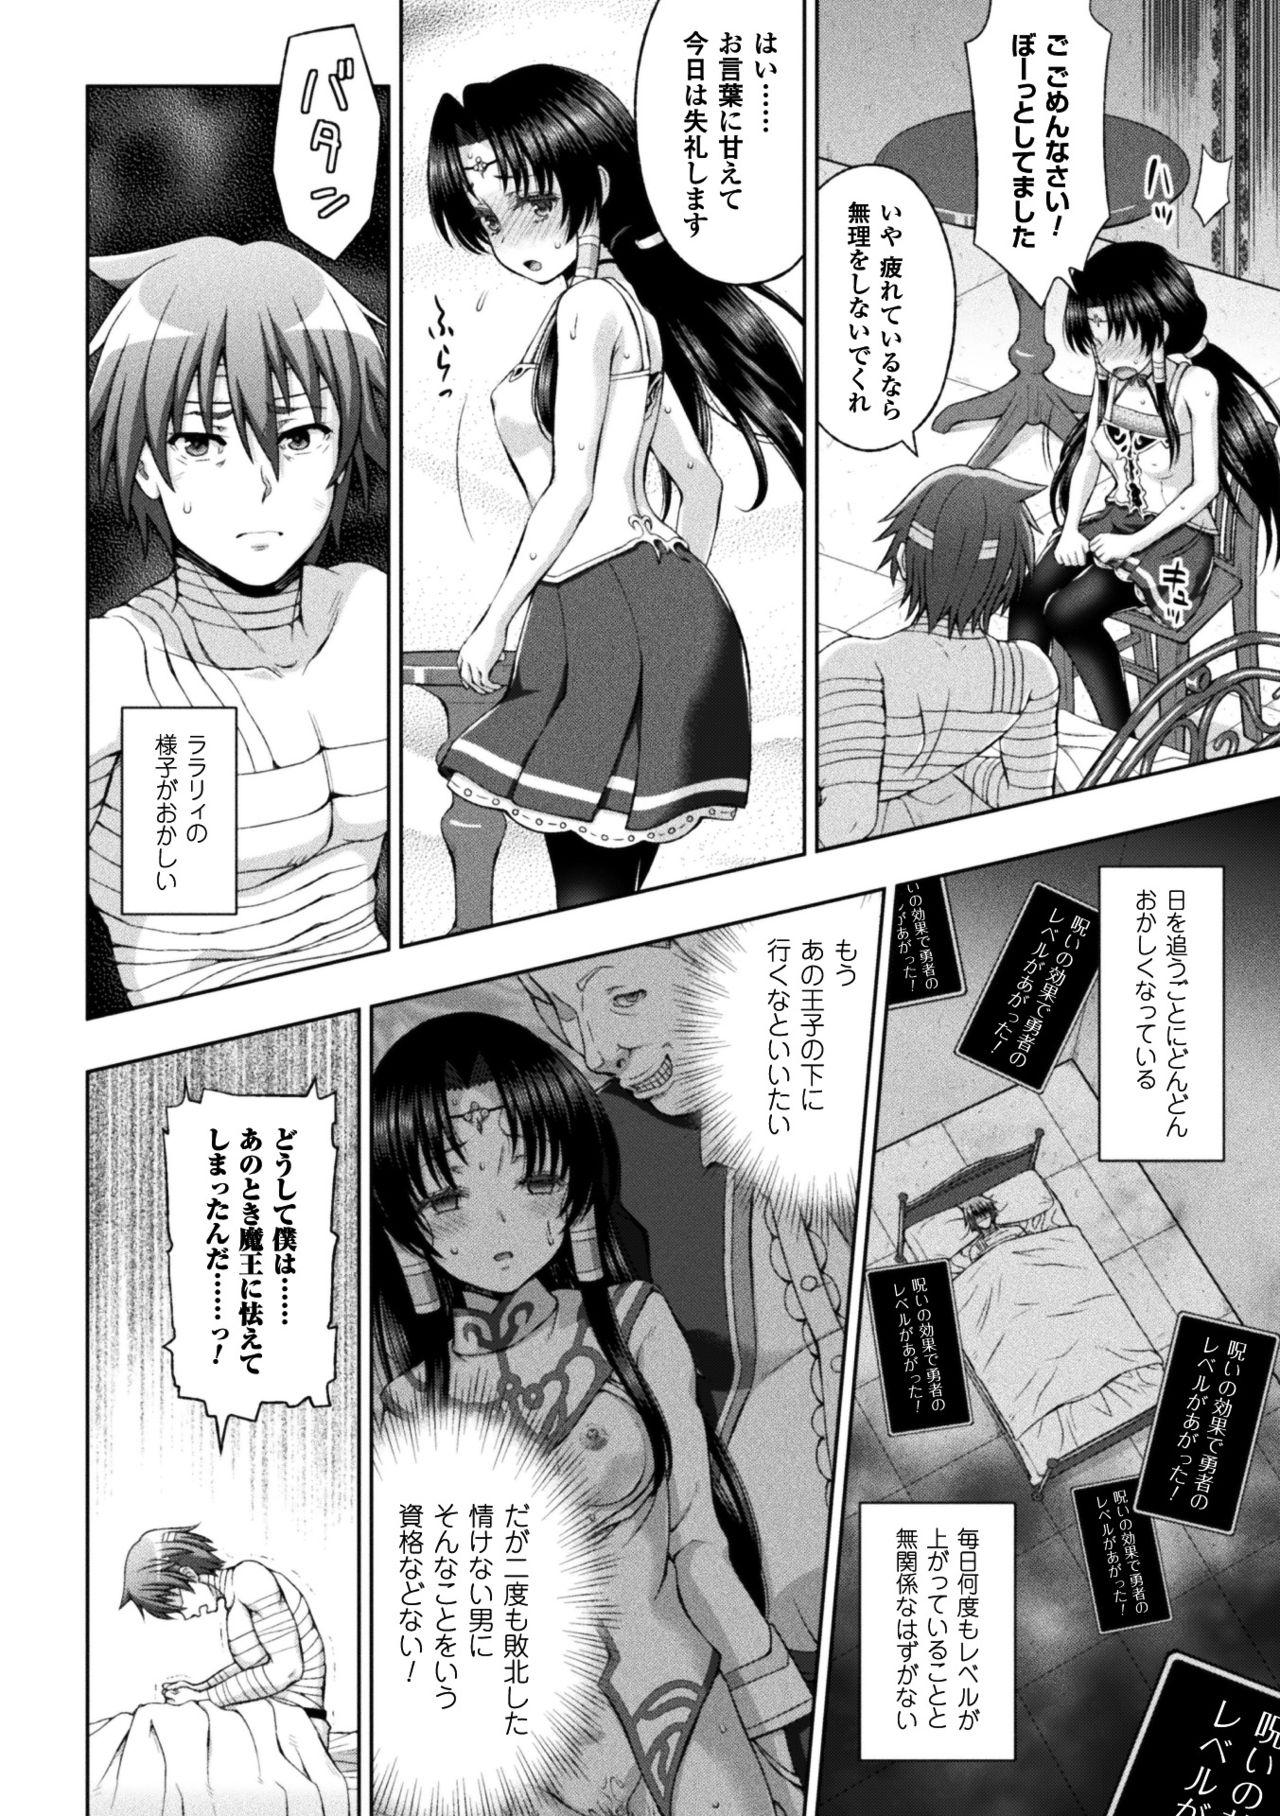 Seigi no Heroine Kangoku File Vol. 14 39